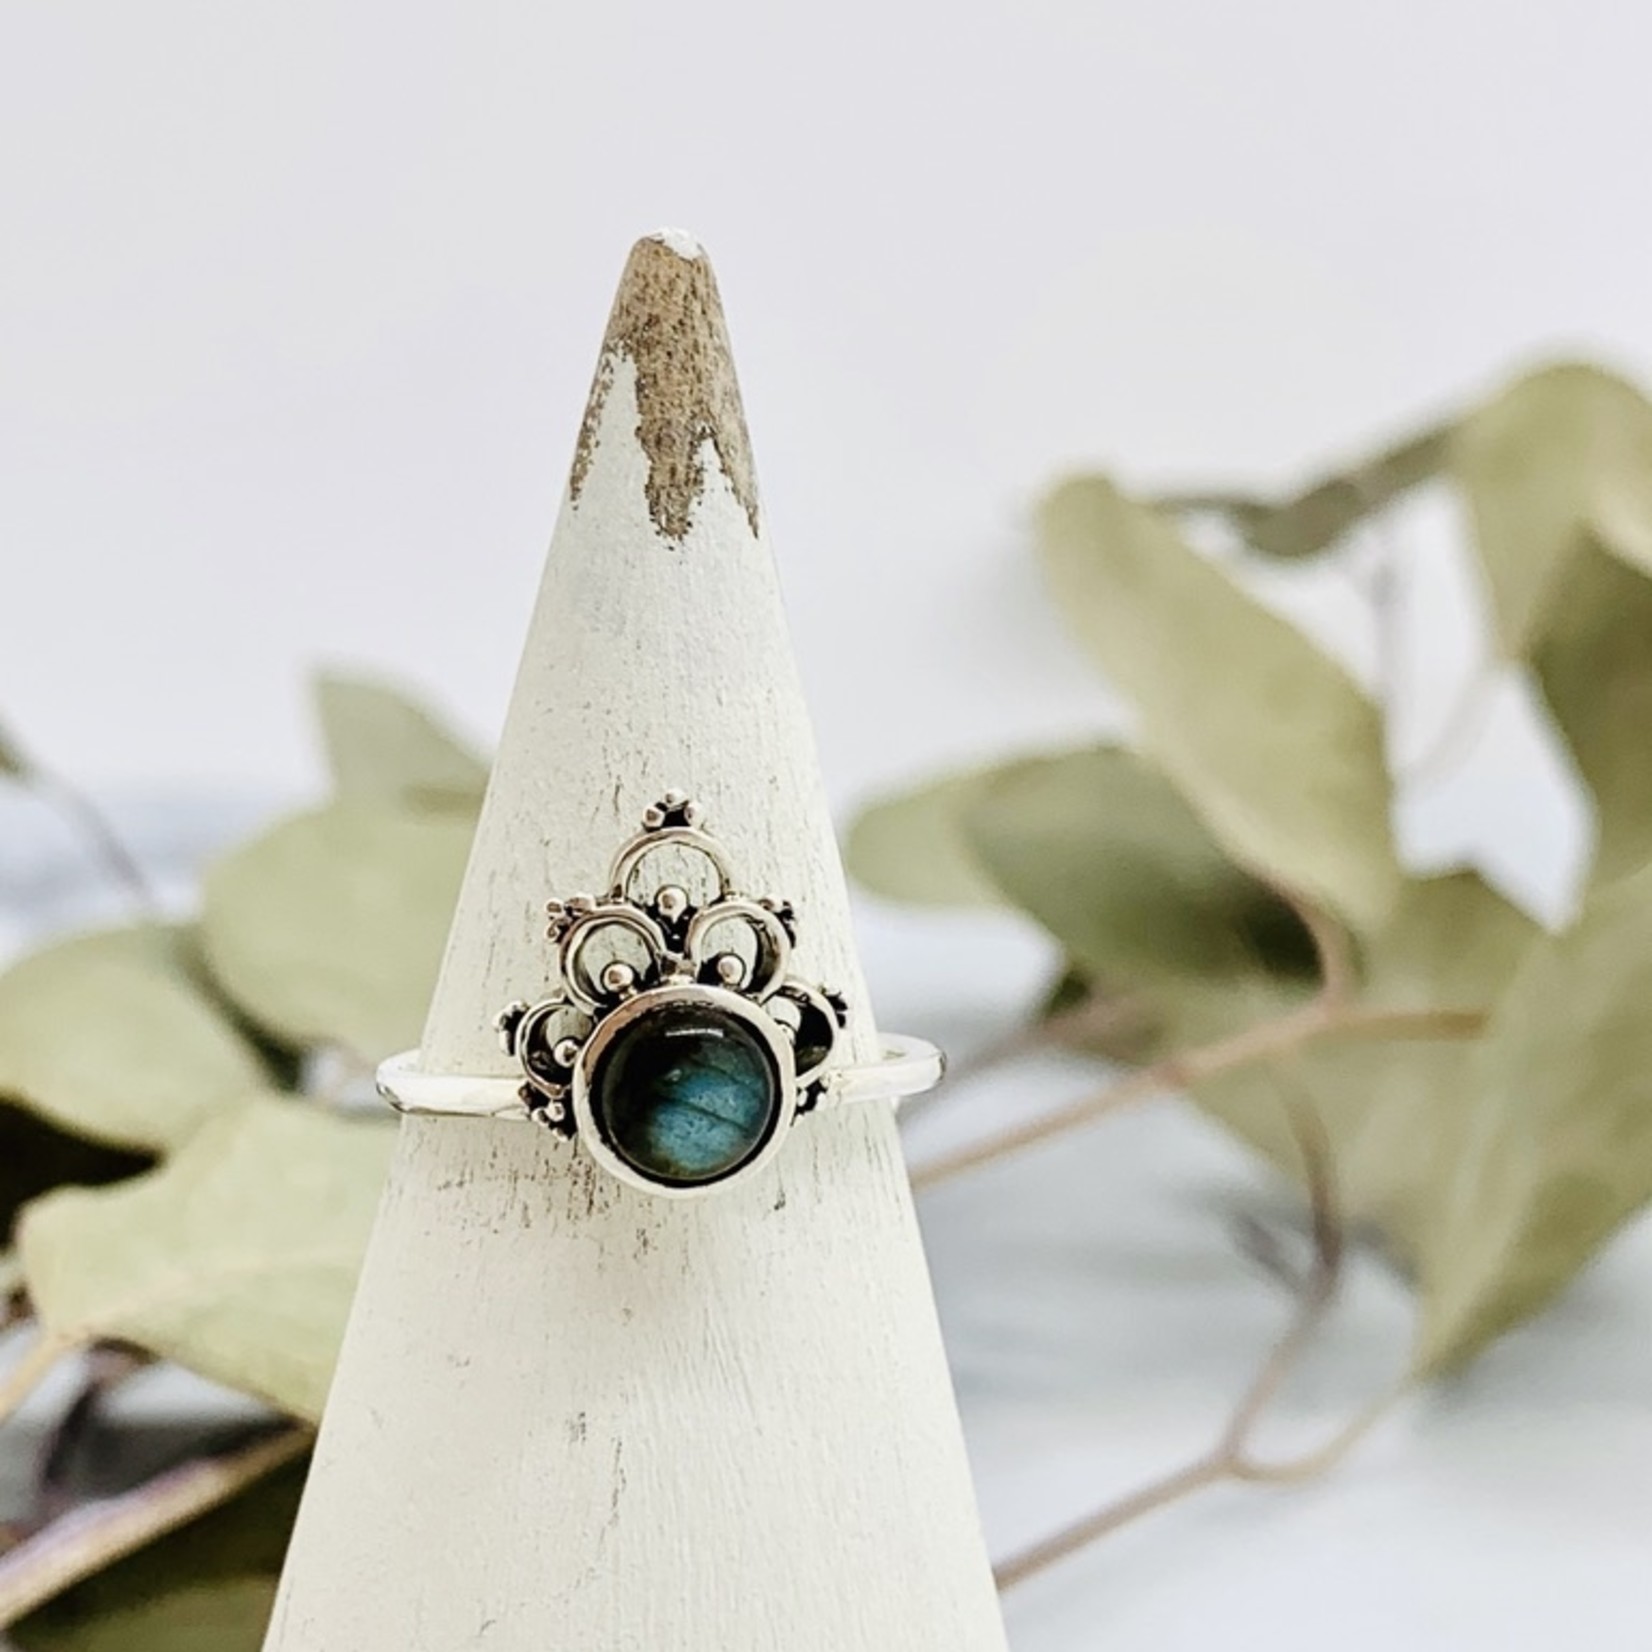 Silver Crowned Labradorite Ring